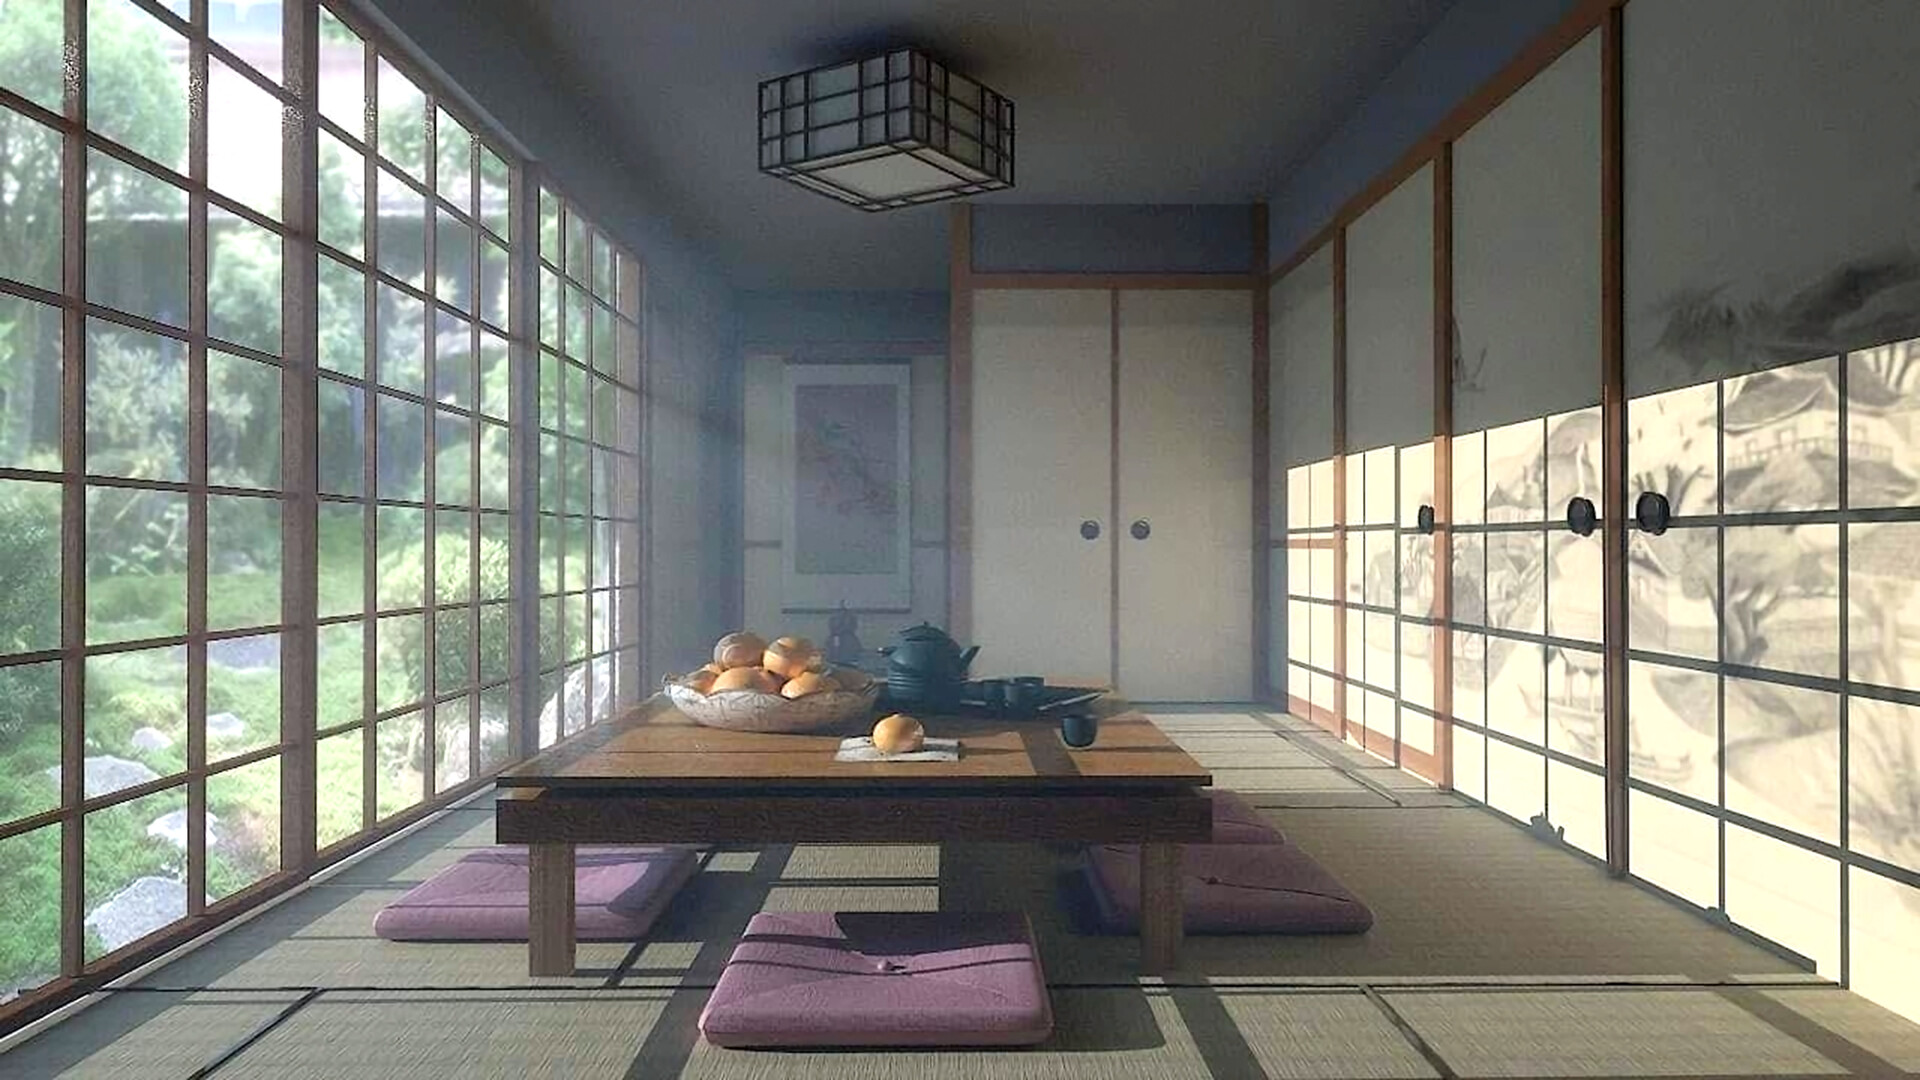 ArtStation - Traditional Japanese Tea Room